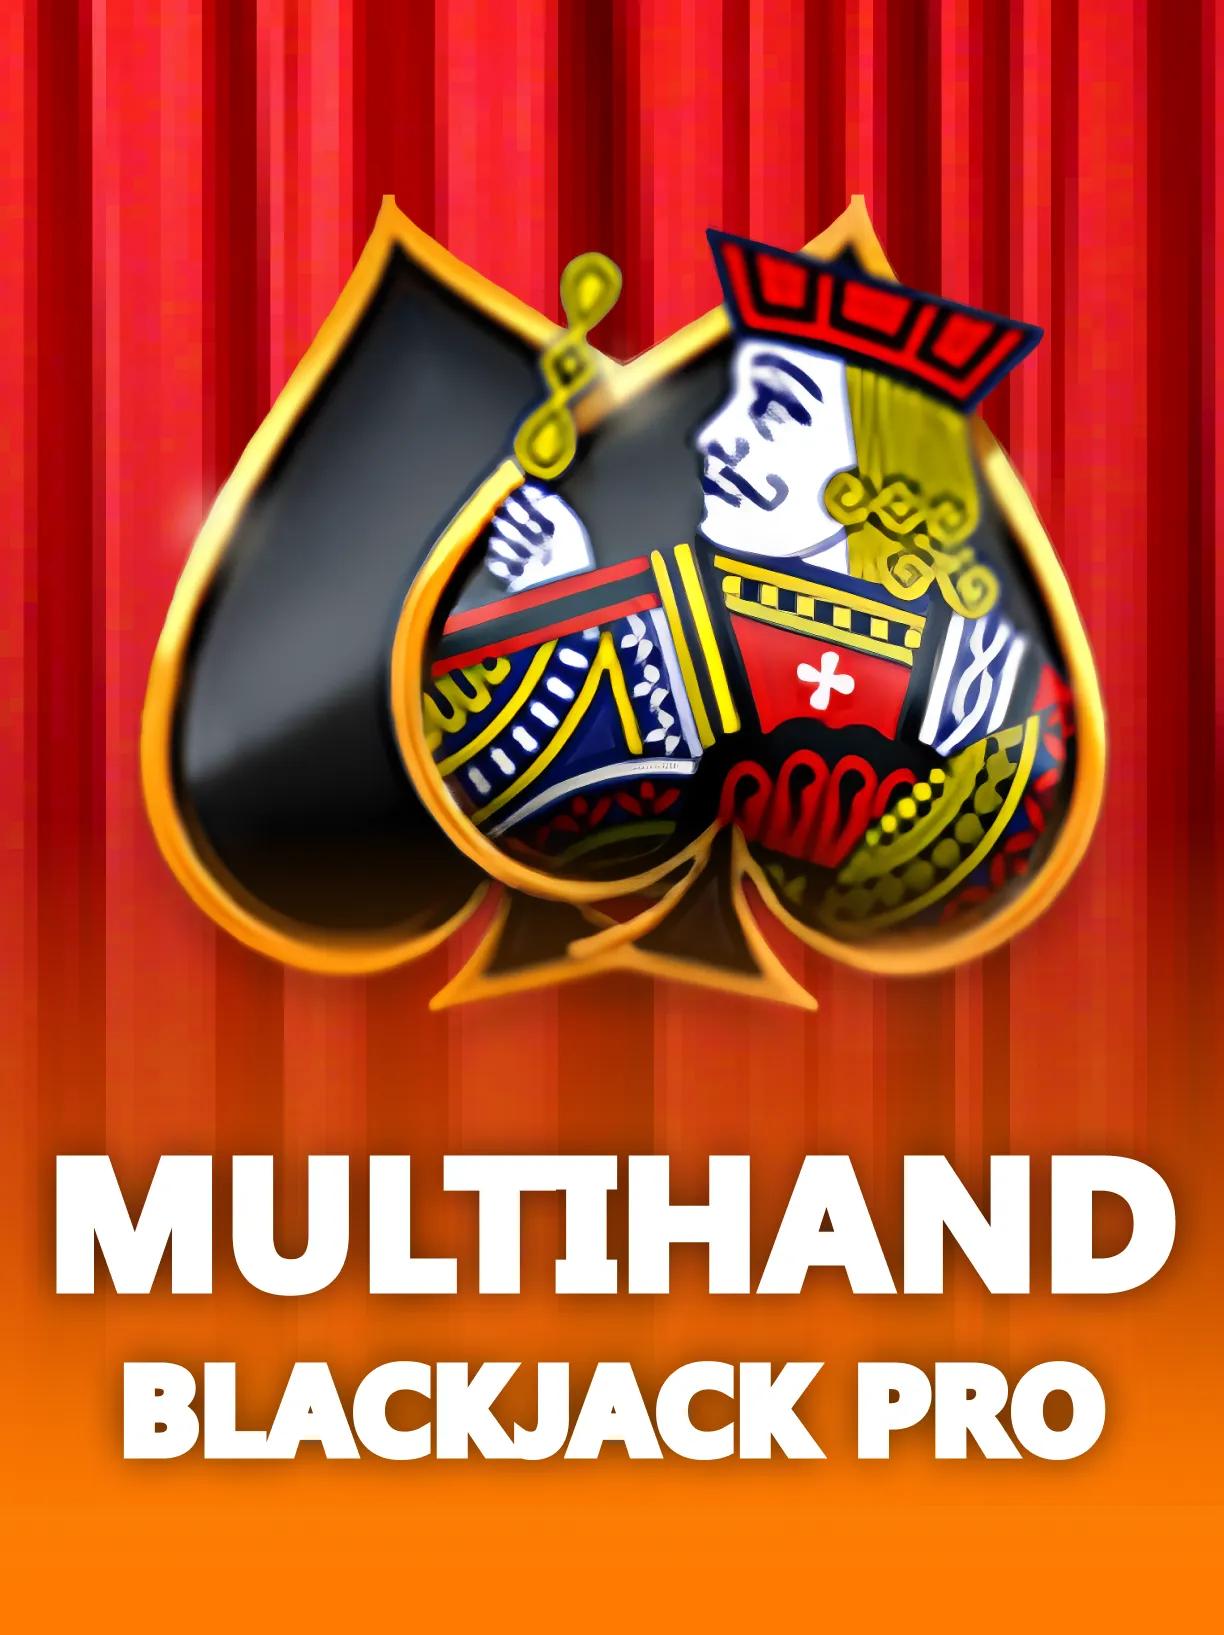 Multihand_Blackjack_Pro_square.webp